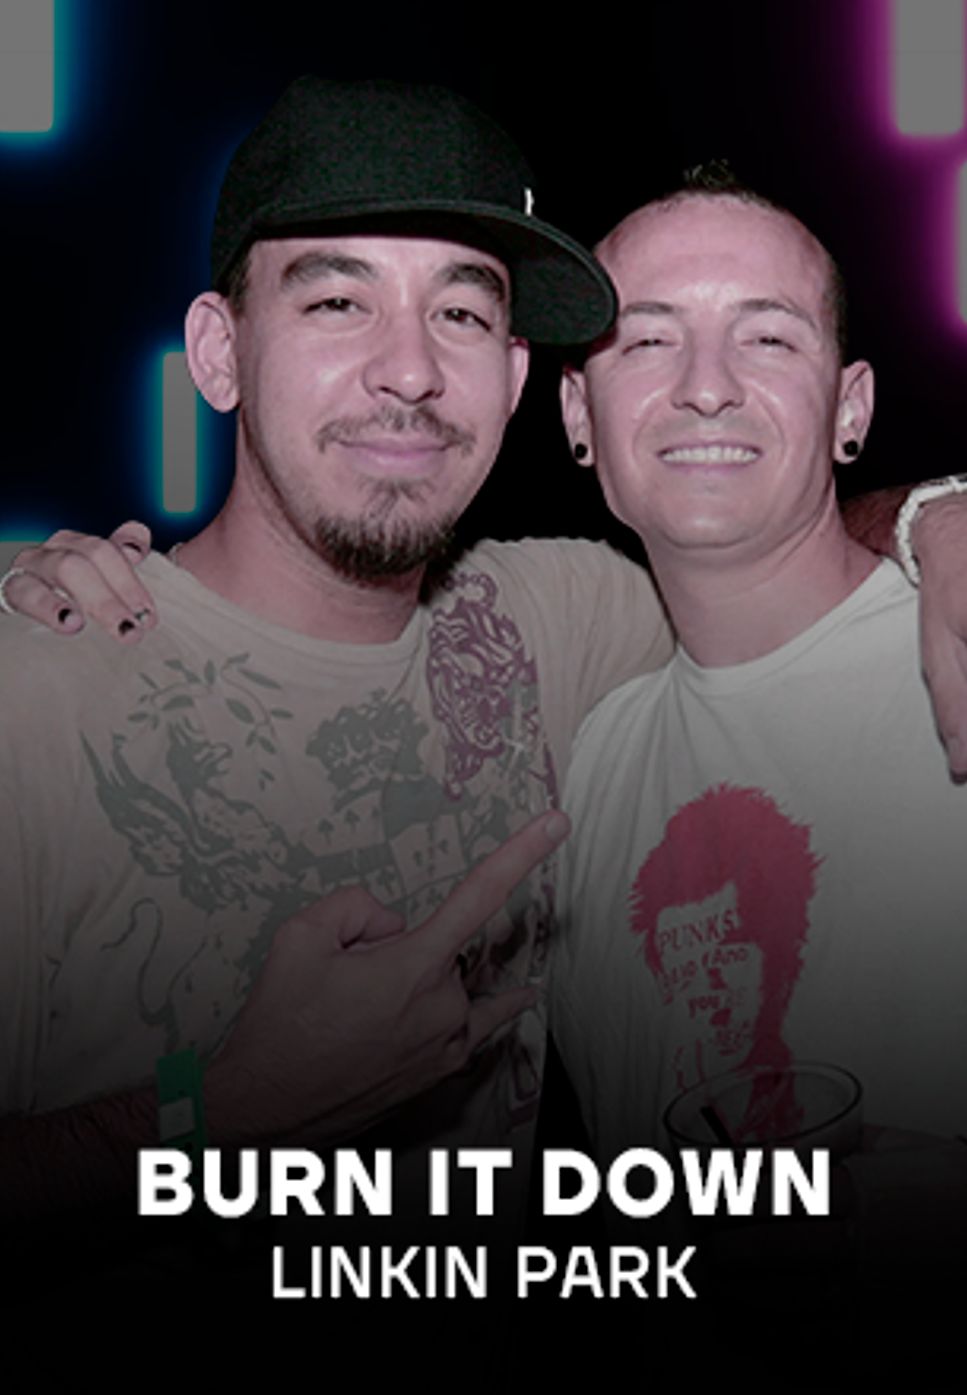 Linkin Park - Burn It Down by KinPiano